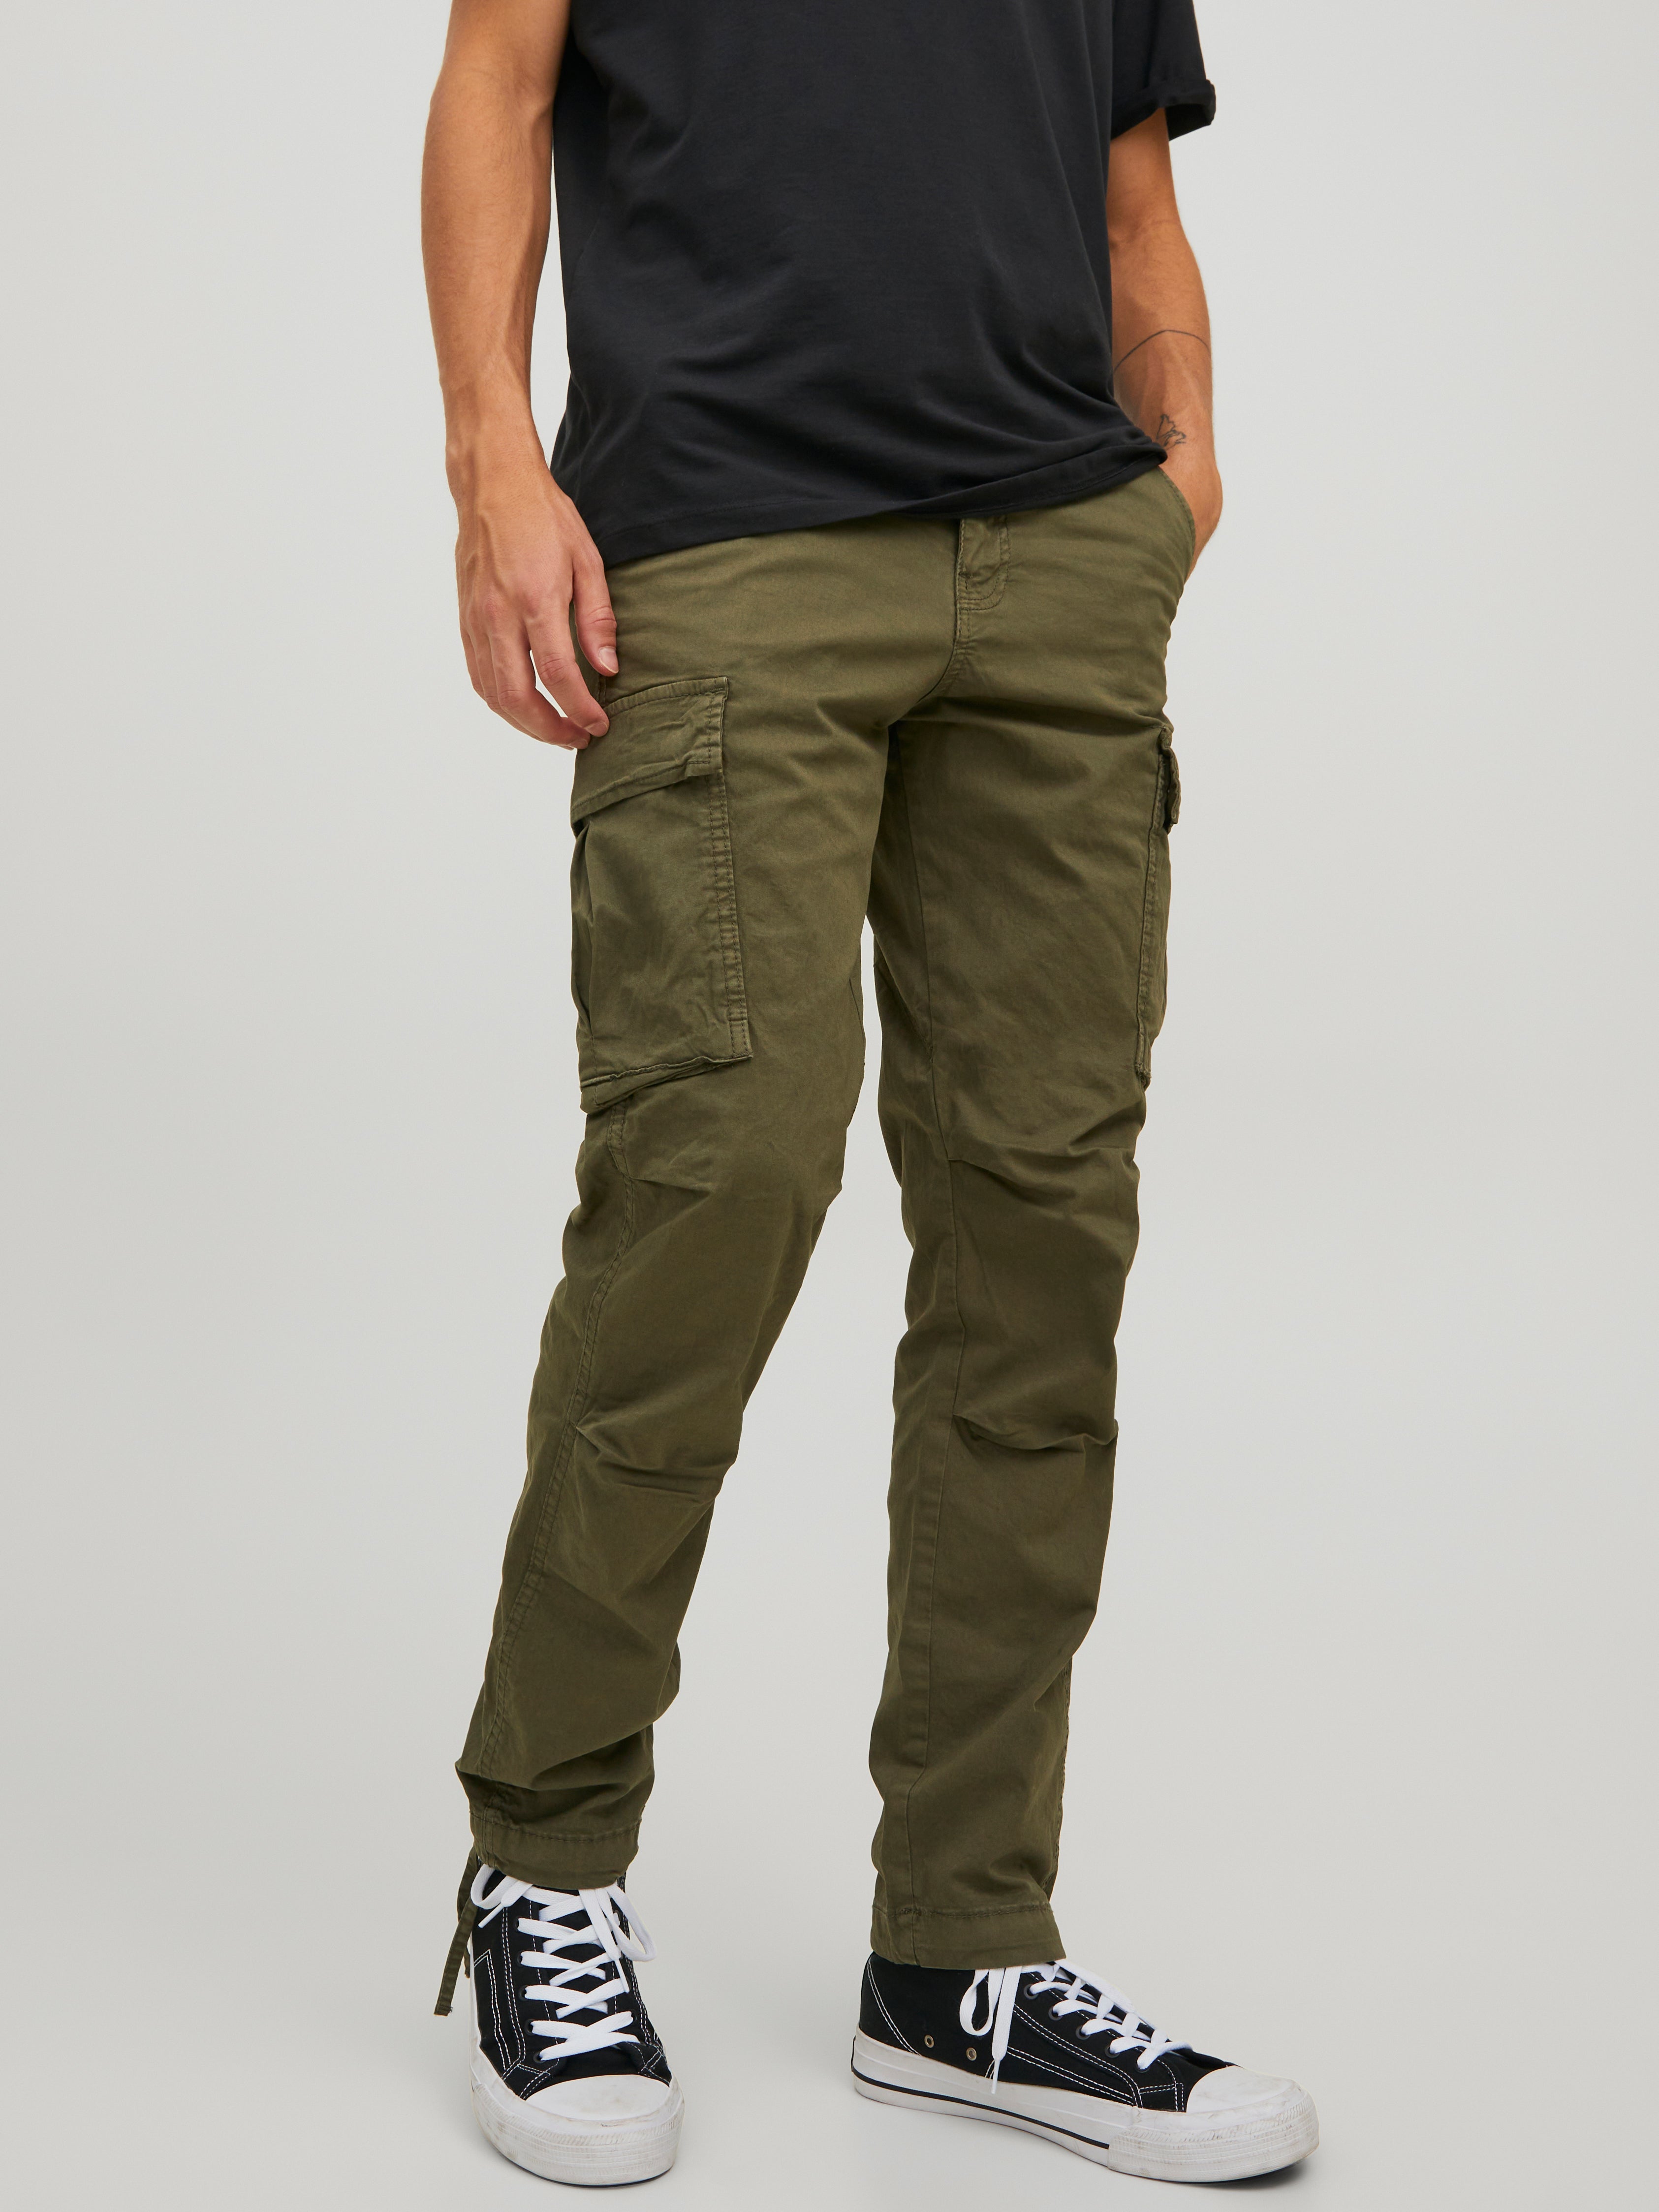 Jack & Jones Intelligence slim fit cargo trousers in green | ASOS | Slim  fit cargo pants, Pants outfit men, Green cargo pants outfit